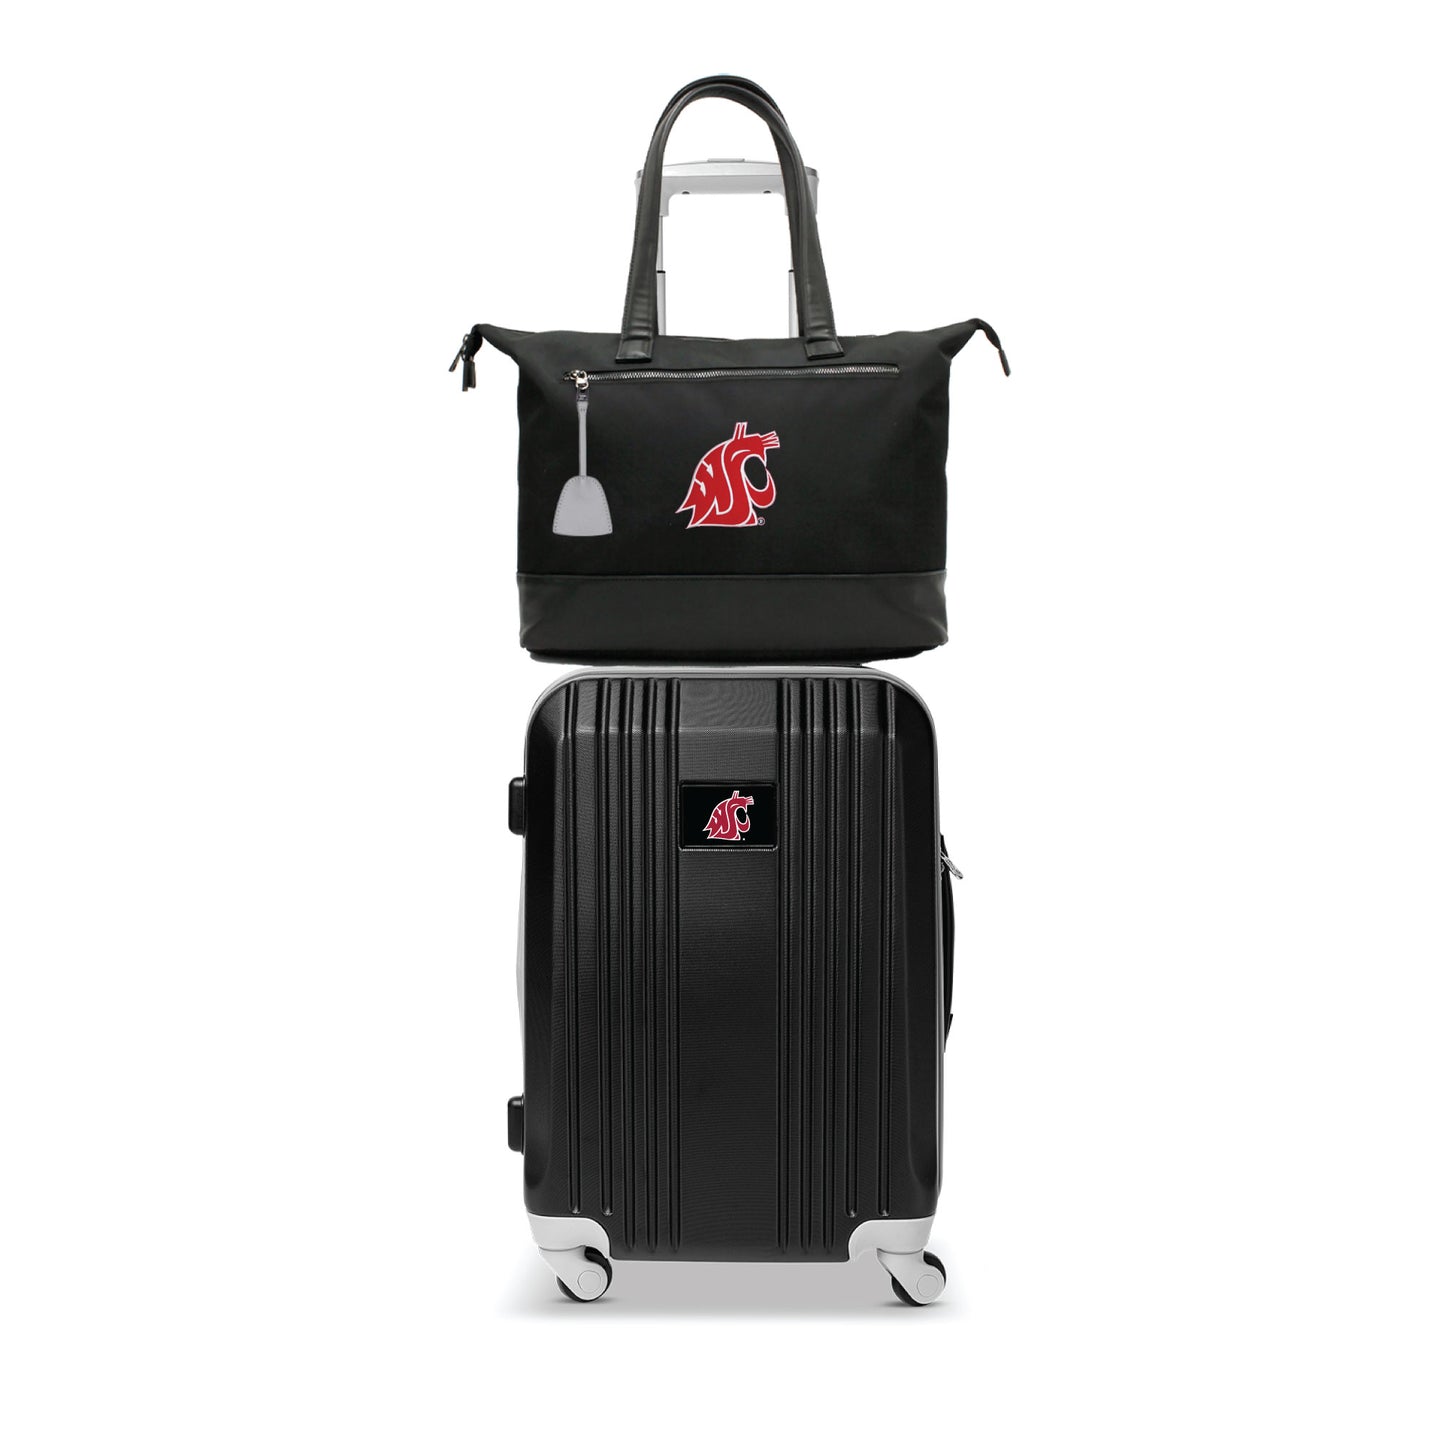 Washington State Cougars Premium Laptop Tote Bag and Luggage Set